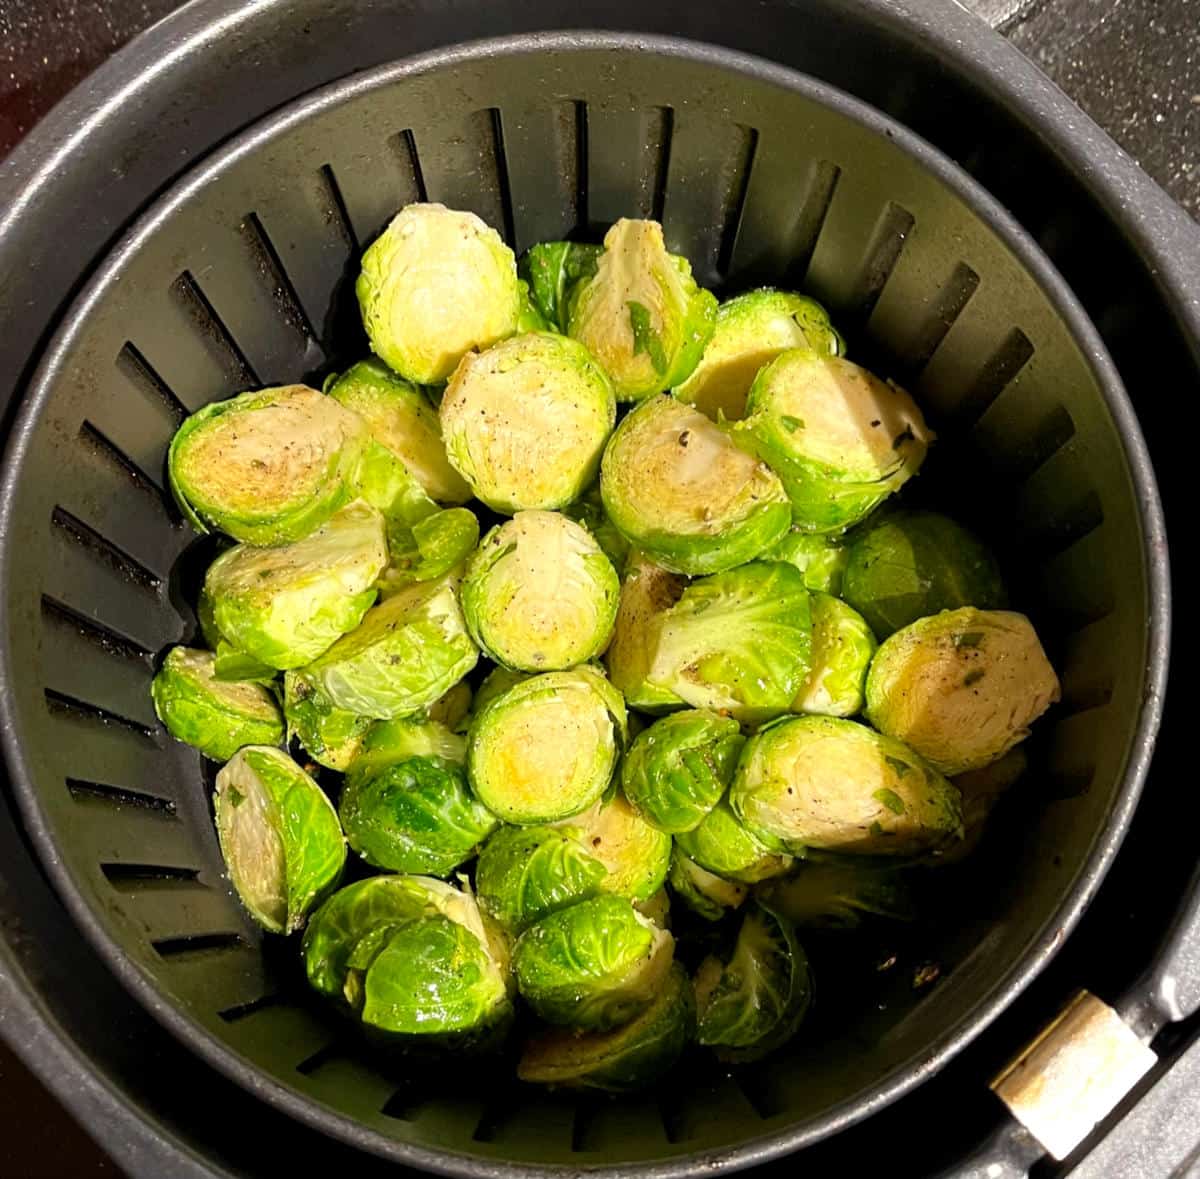 Seasoned Brussels sprouts in air fryer basket.